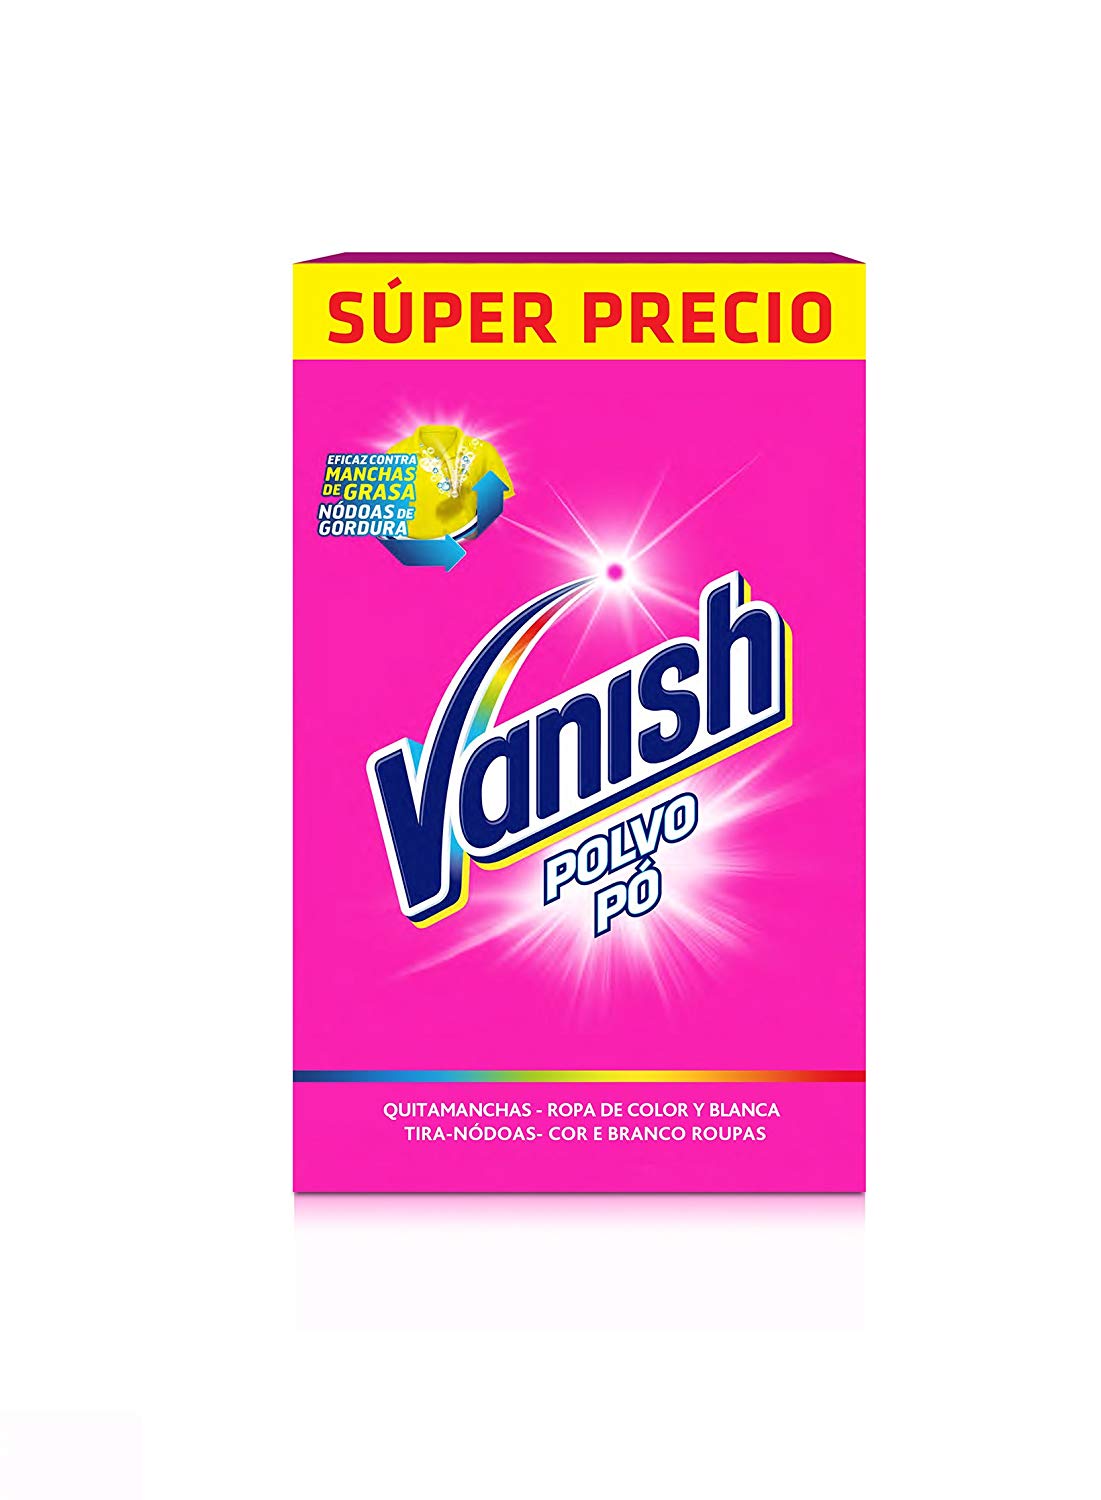 Detergente Vanish quitamanchas en polvo 600 gr solo 1,6€